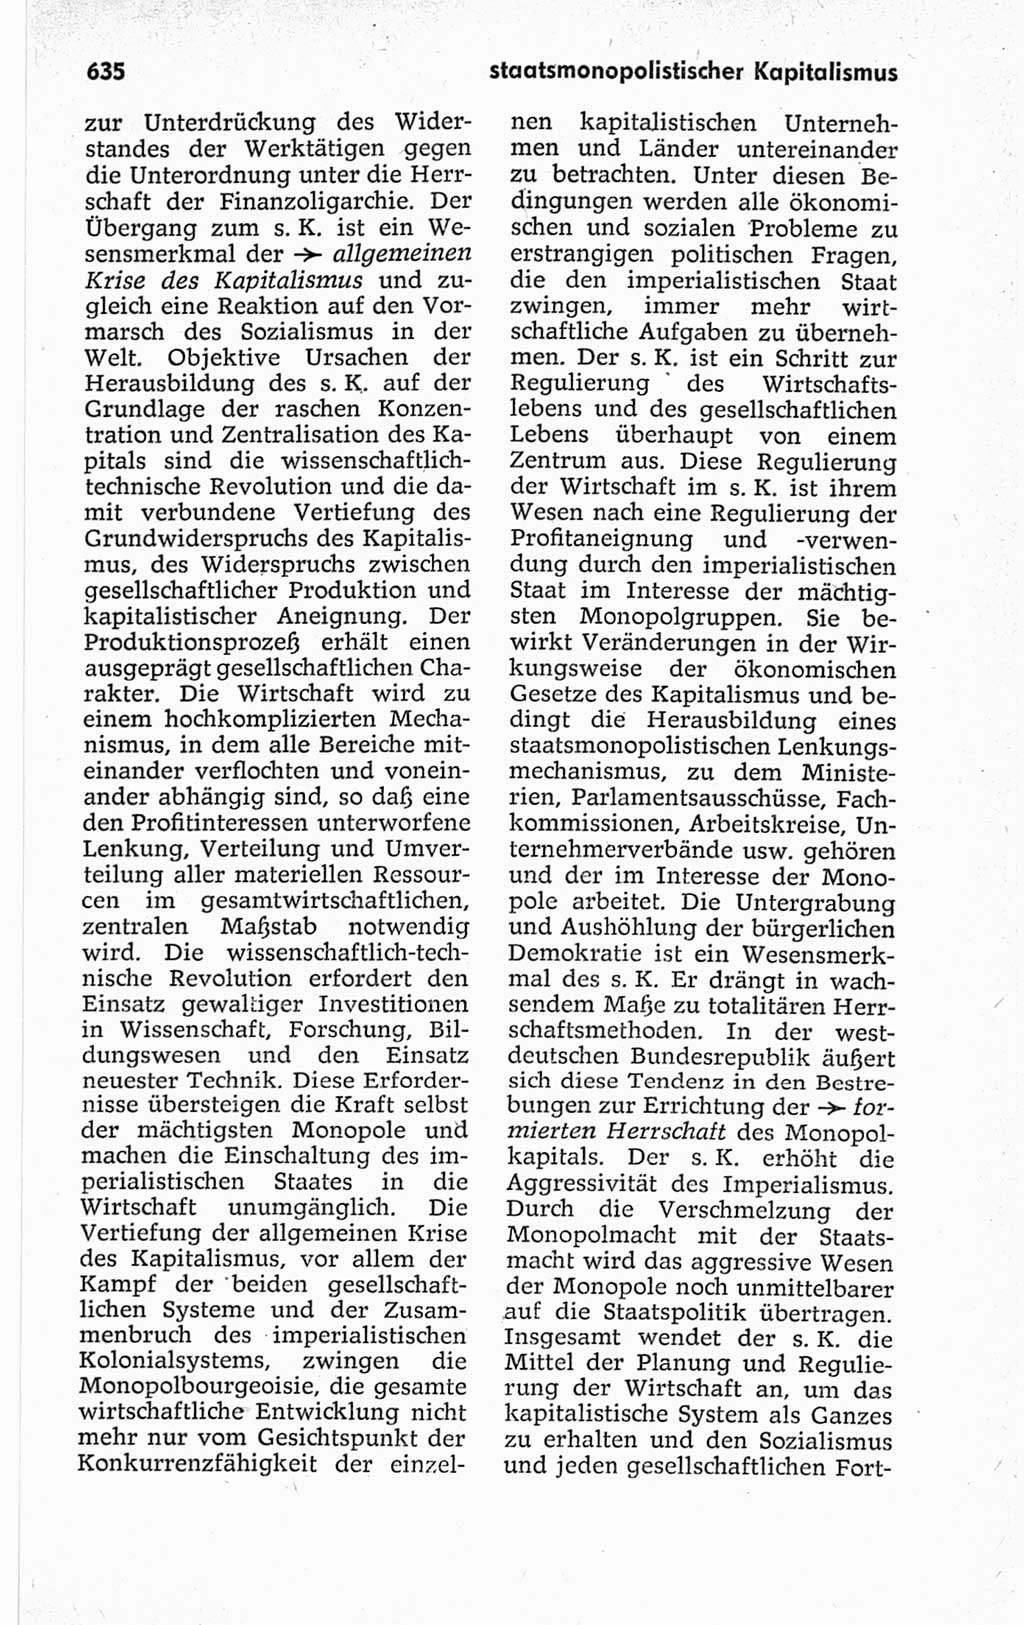 Kleines politisches Wörterbuch [Deutsche Demokratische Republik (DDR)] 1967, Seite 635 (Kl. pol. Wb. DDR 1967, S. 635)